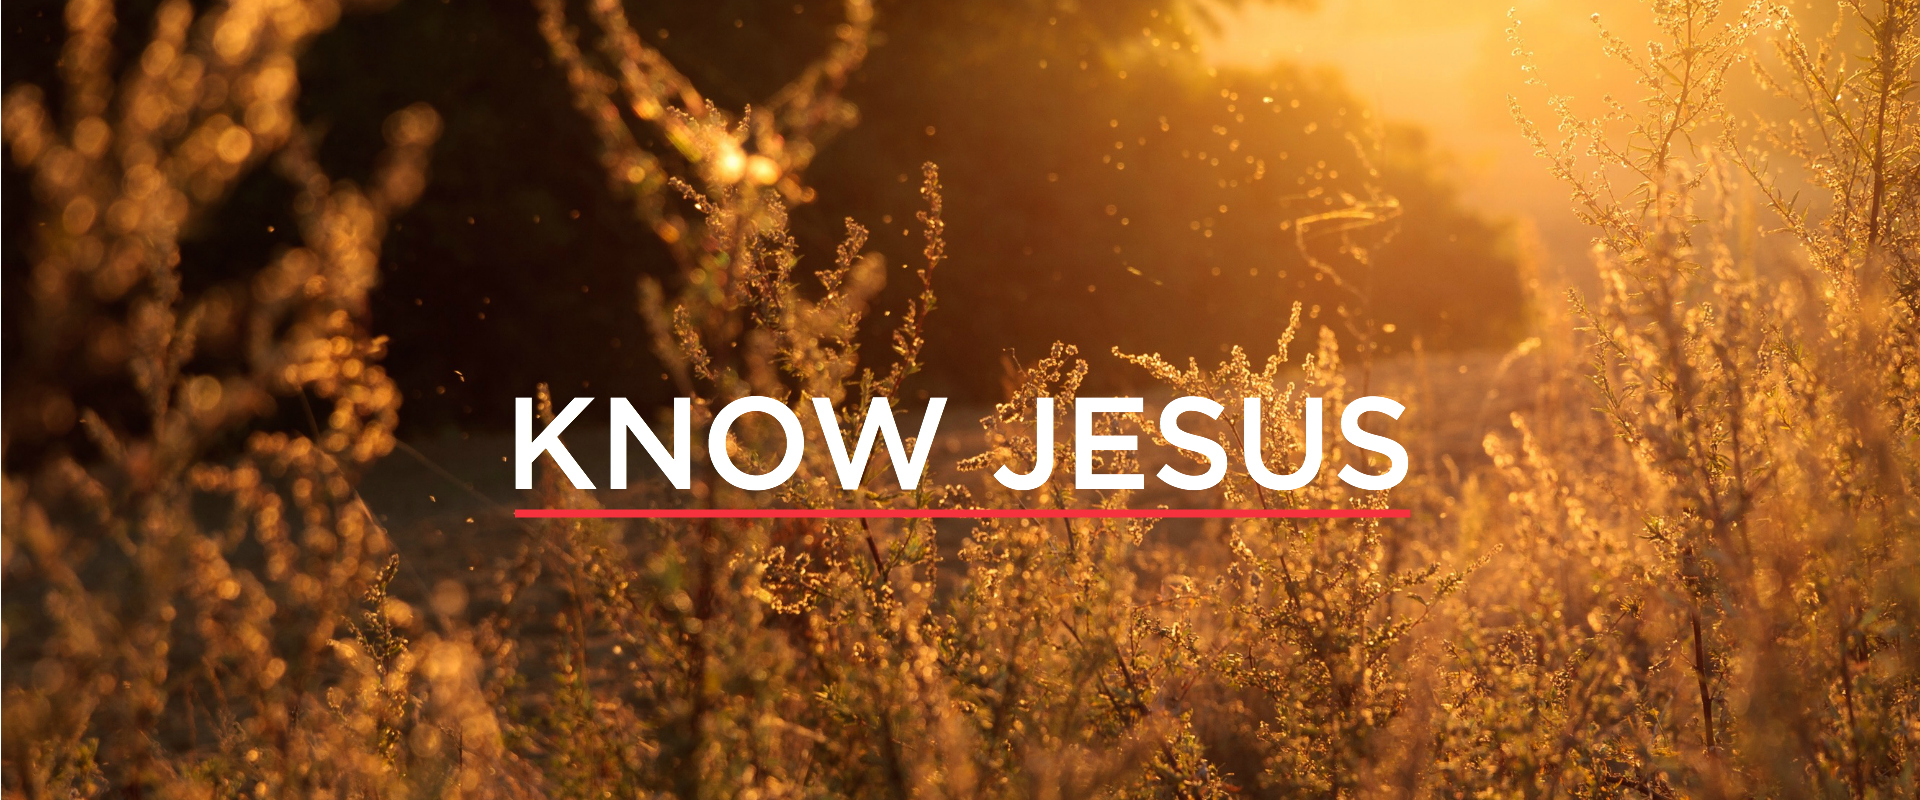 KNOW JESUS THE MORE